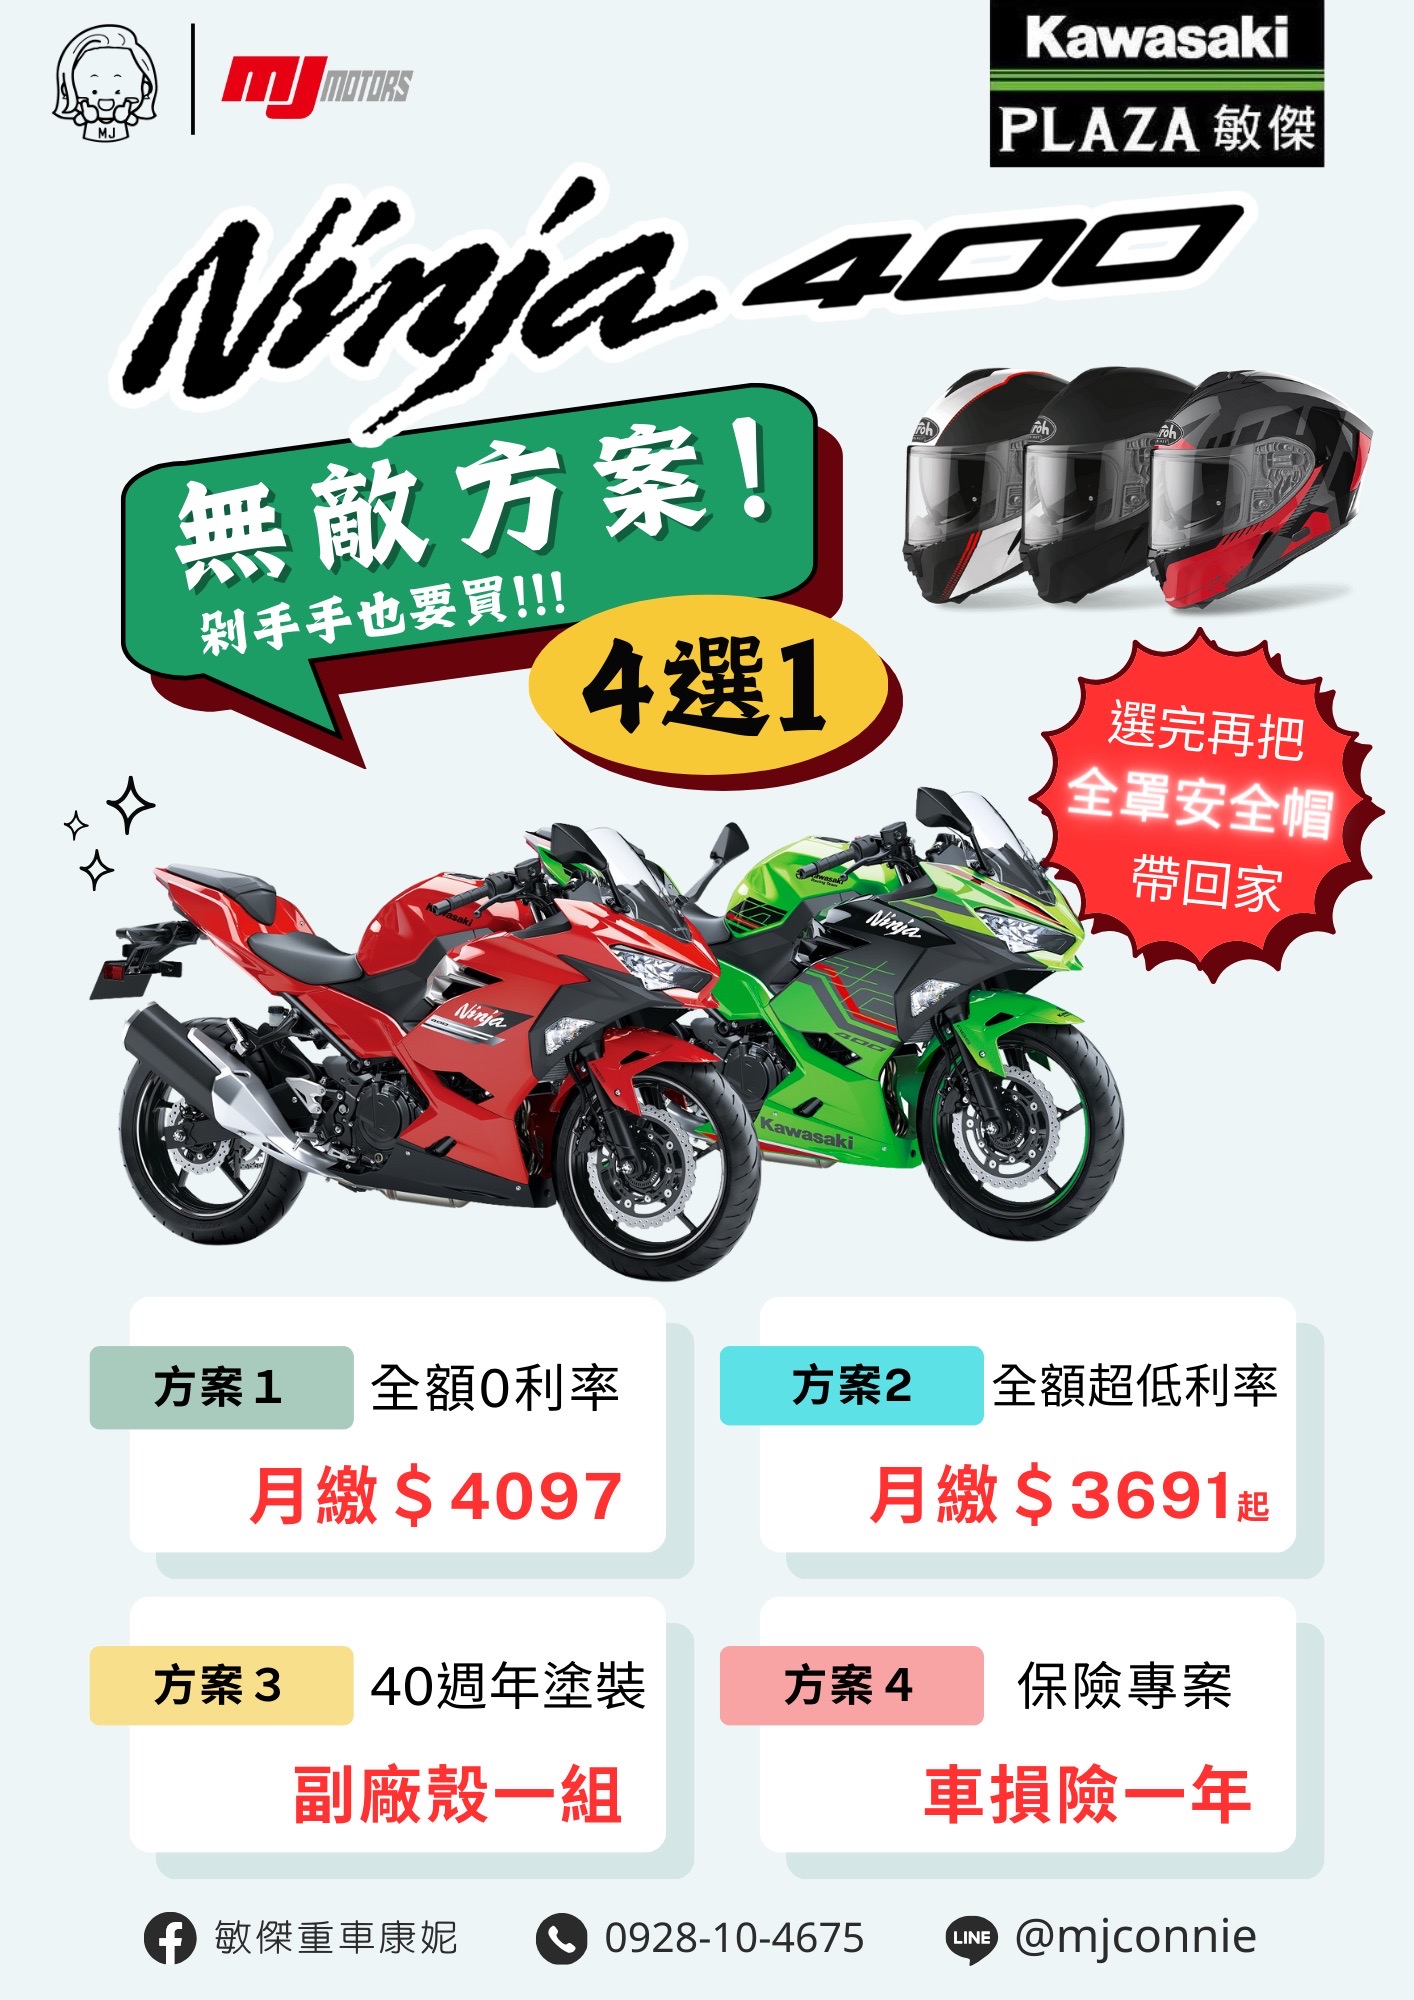 【敏傑車業資深銷售專員 康妮 Connie】KAWASAKI NINJA400 - 「Webike-摩托車市」 『敏傑康妮』 Kawasaki Ninja400 無敵方案四選一任您選~~ 再送您一頂全罩安全帽